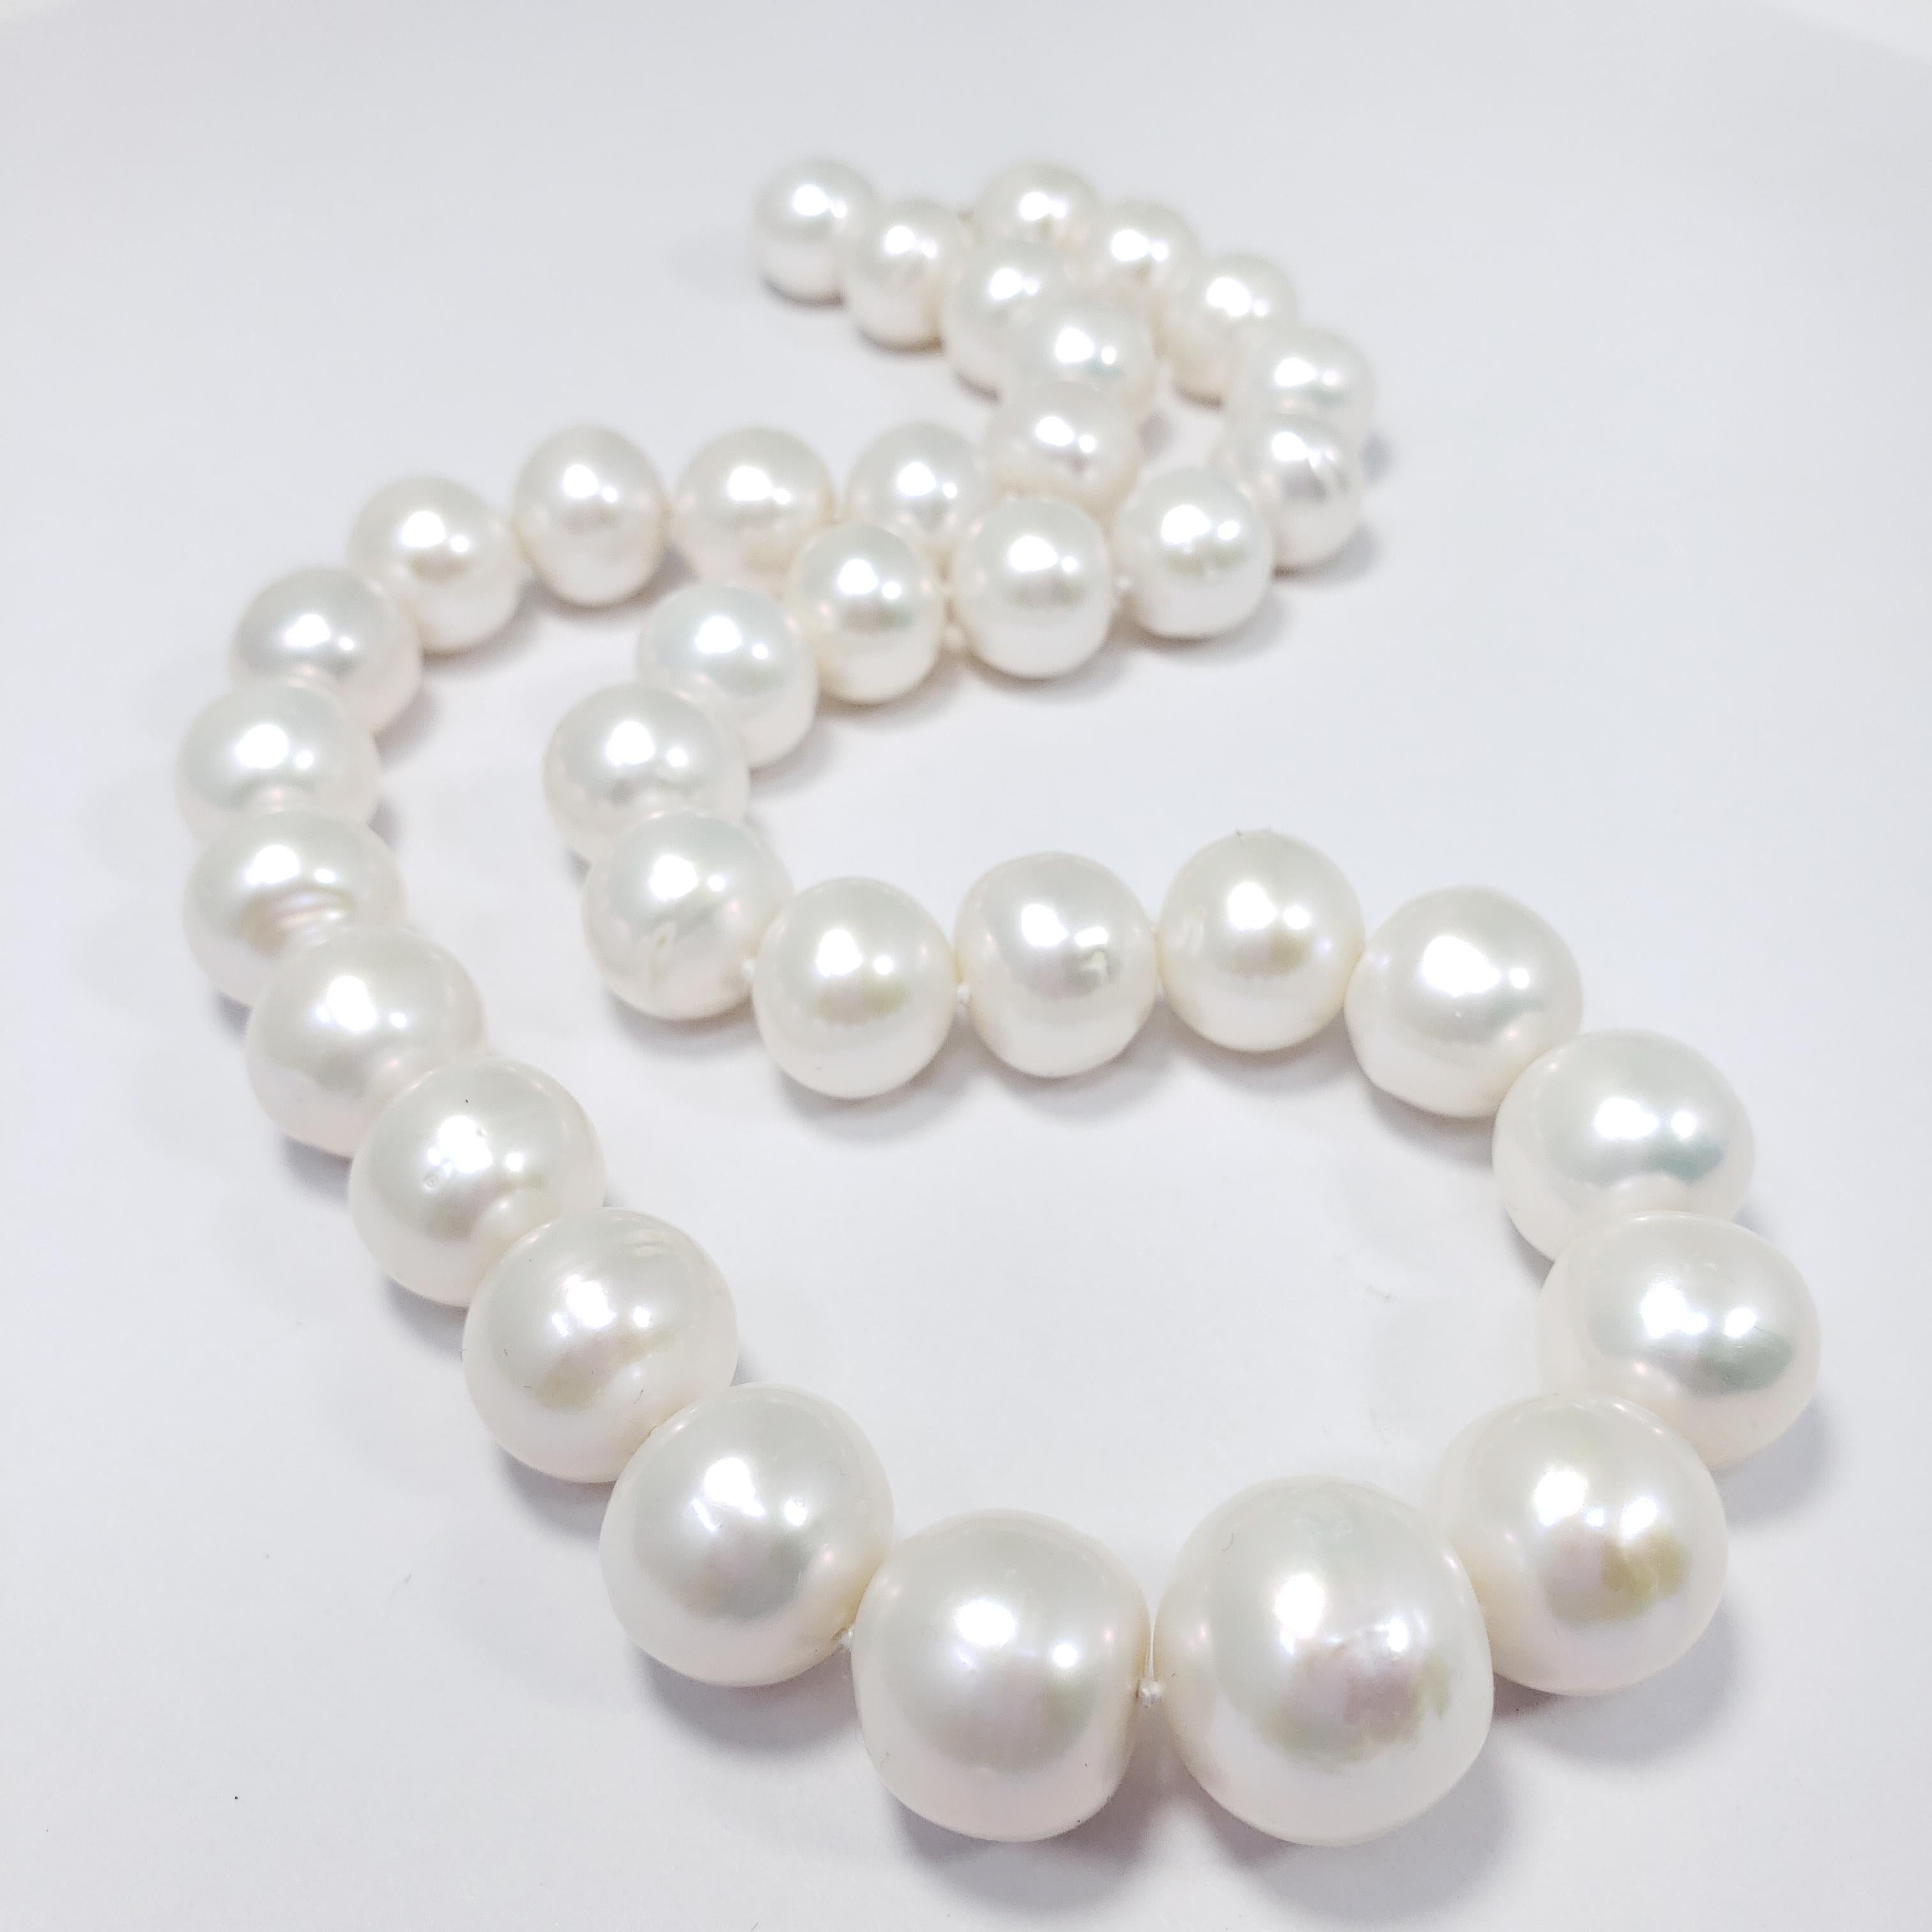 Un exquis collier de perles des mers du Sud ! Whiting présente des perles blanches graduées sur un cordon noué, rehaussé d'un fermoir en forme de crabe en or jaune 14K. Une touche finale parfaite pour tous les styles !

Poinçons : 585
Les perles